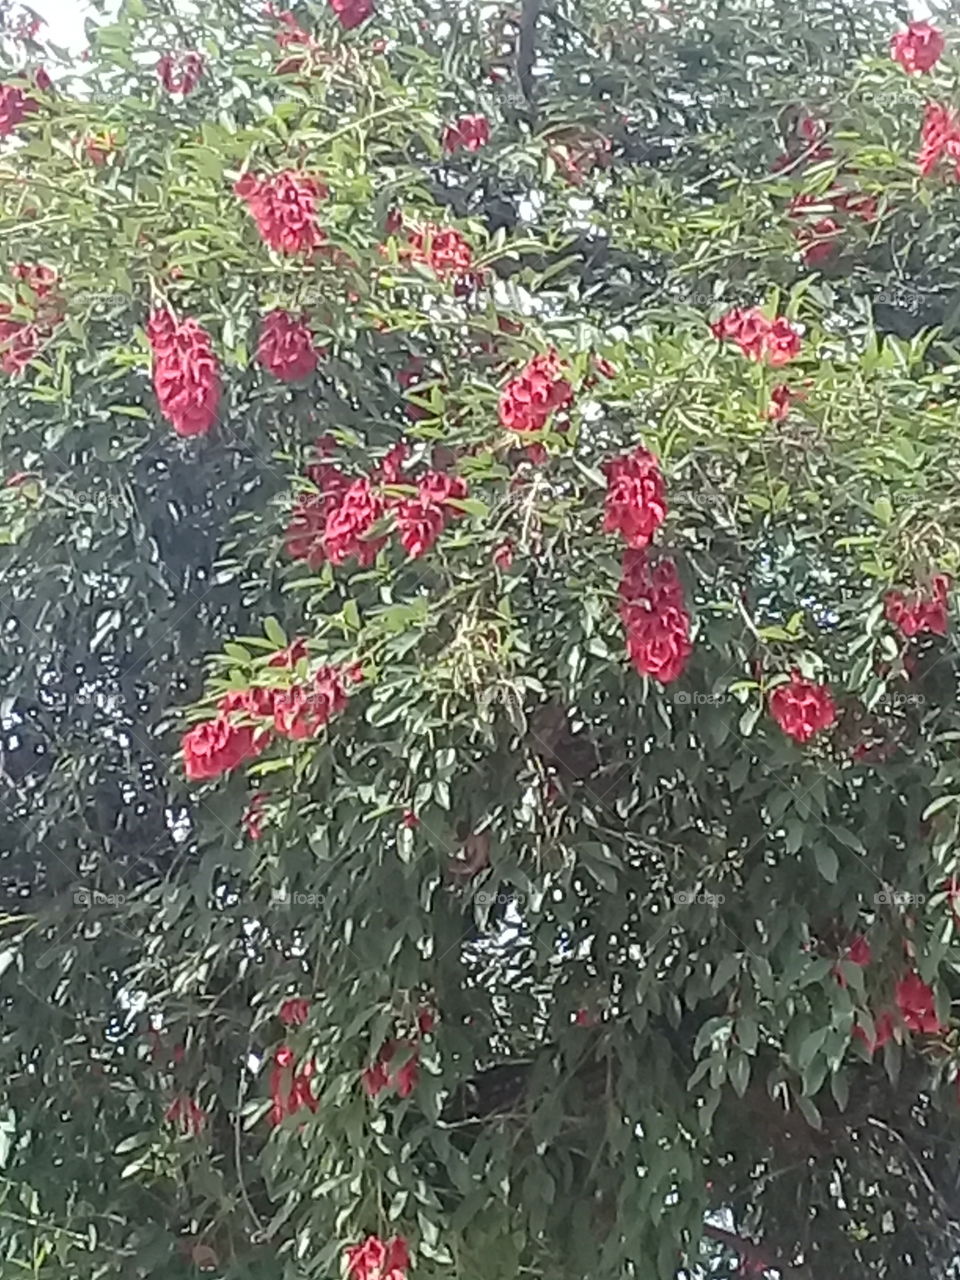 arbol de ceibo profusamente florecido, cuyas flores rojas se entremezclan con las hojas verdes produciendo una agradable vista.